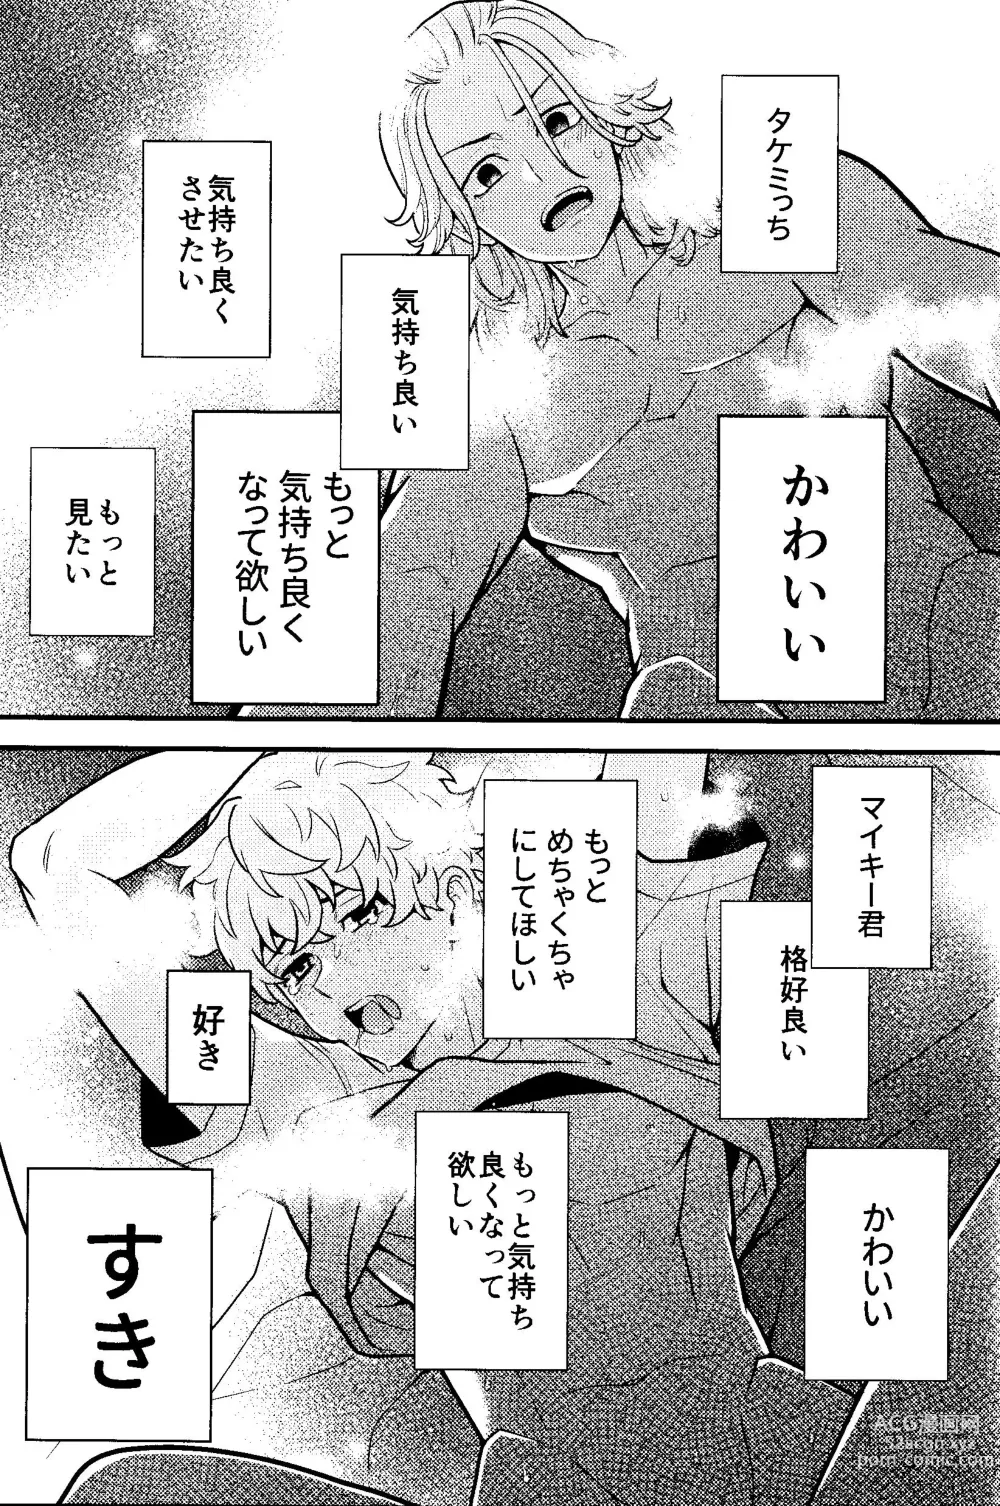 Page 24 of doujinshi Jitsuwa kaihatsu sumidesu